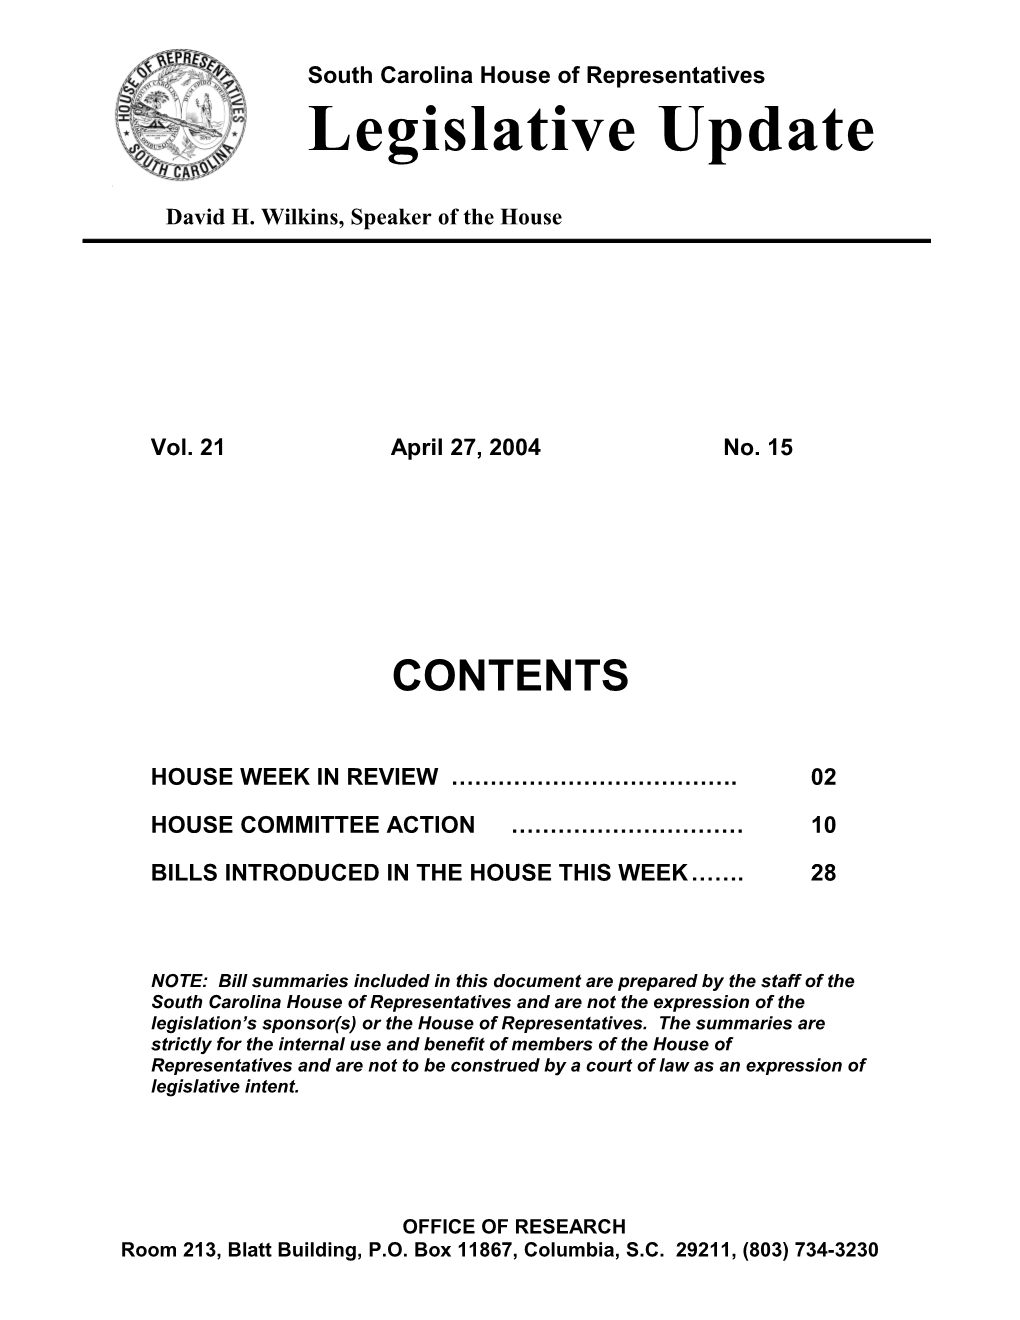 Legislative Update - Vol. 21 No. 15 April 27, 2004 - South Carolina Legislature Online